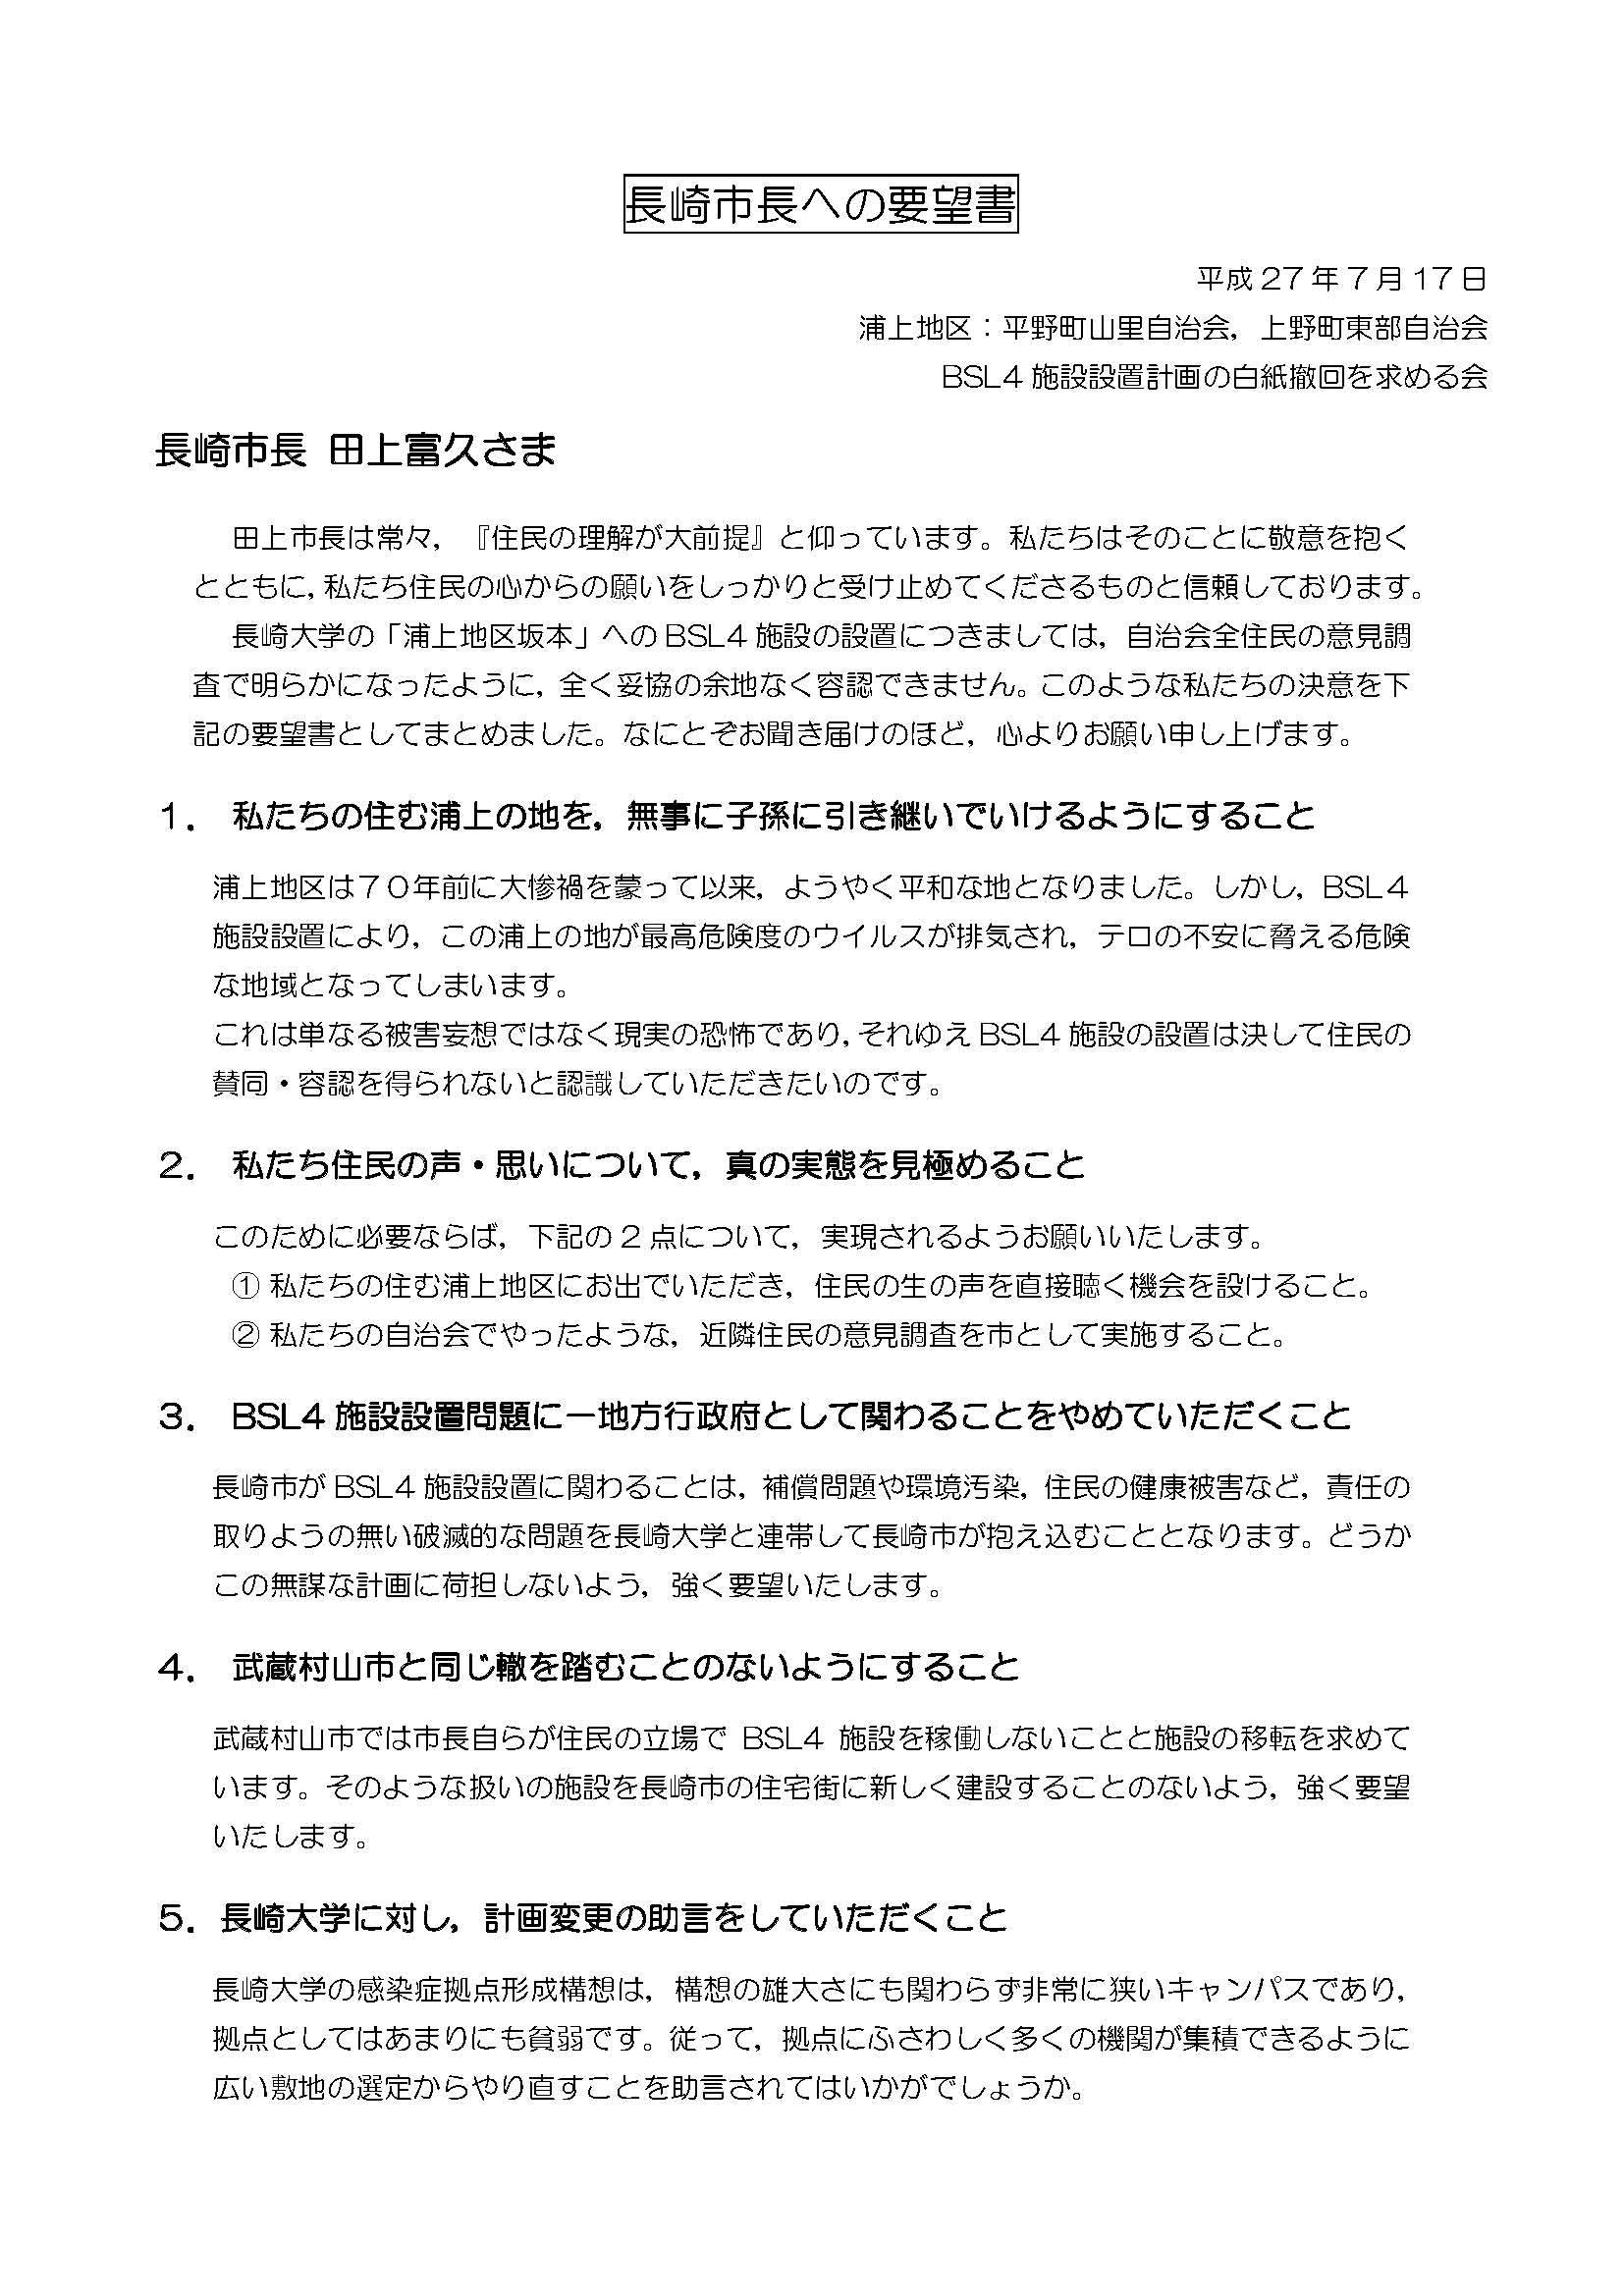 長崎市長との面会の概要 長崎大学のbsl4施設設置計画は白紙撤回を